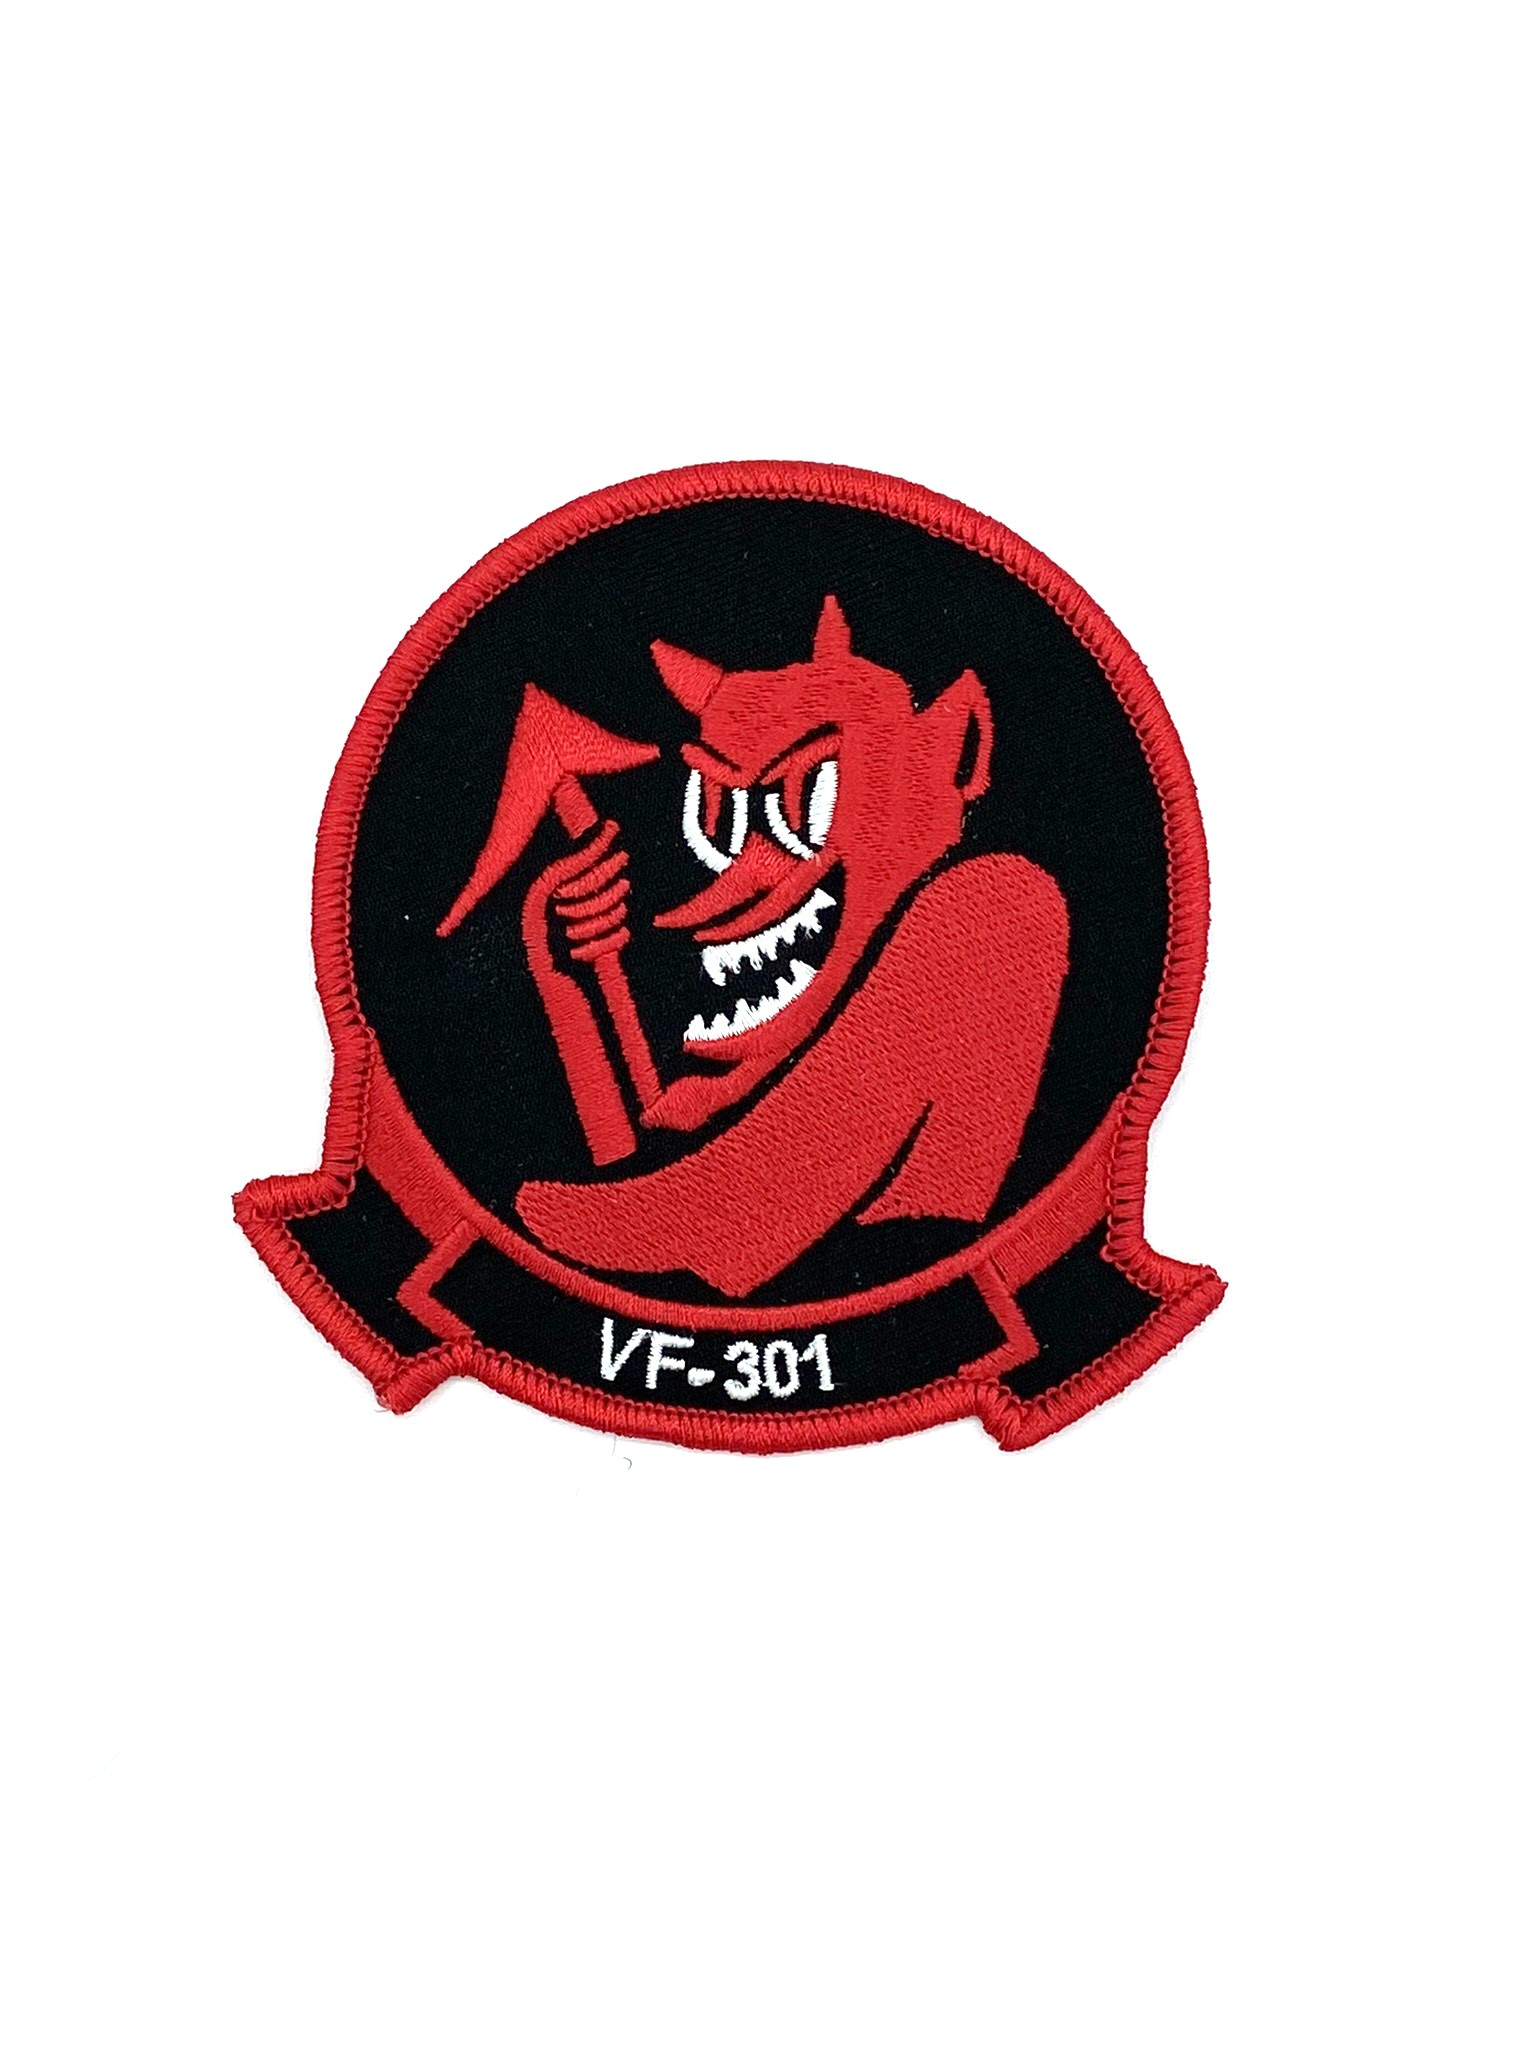 VF-301 Devil’s Disciples Squadron Patch